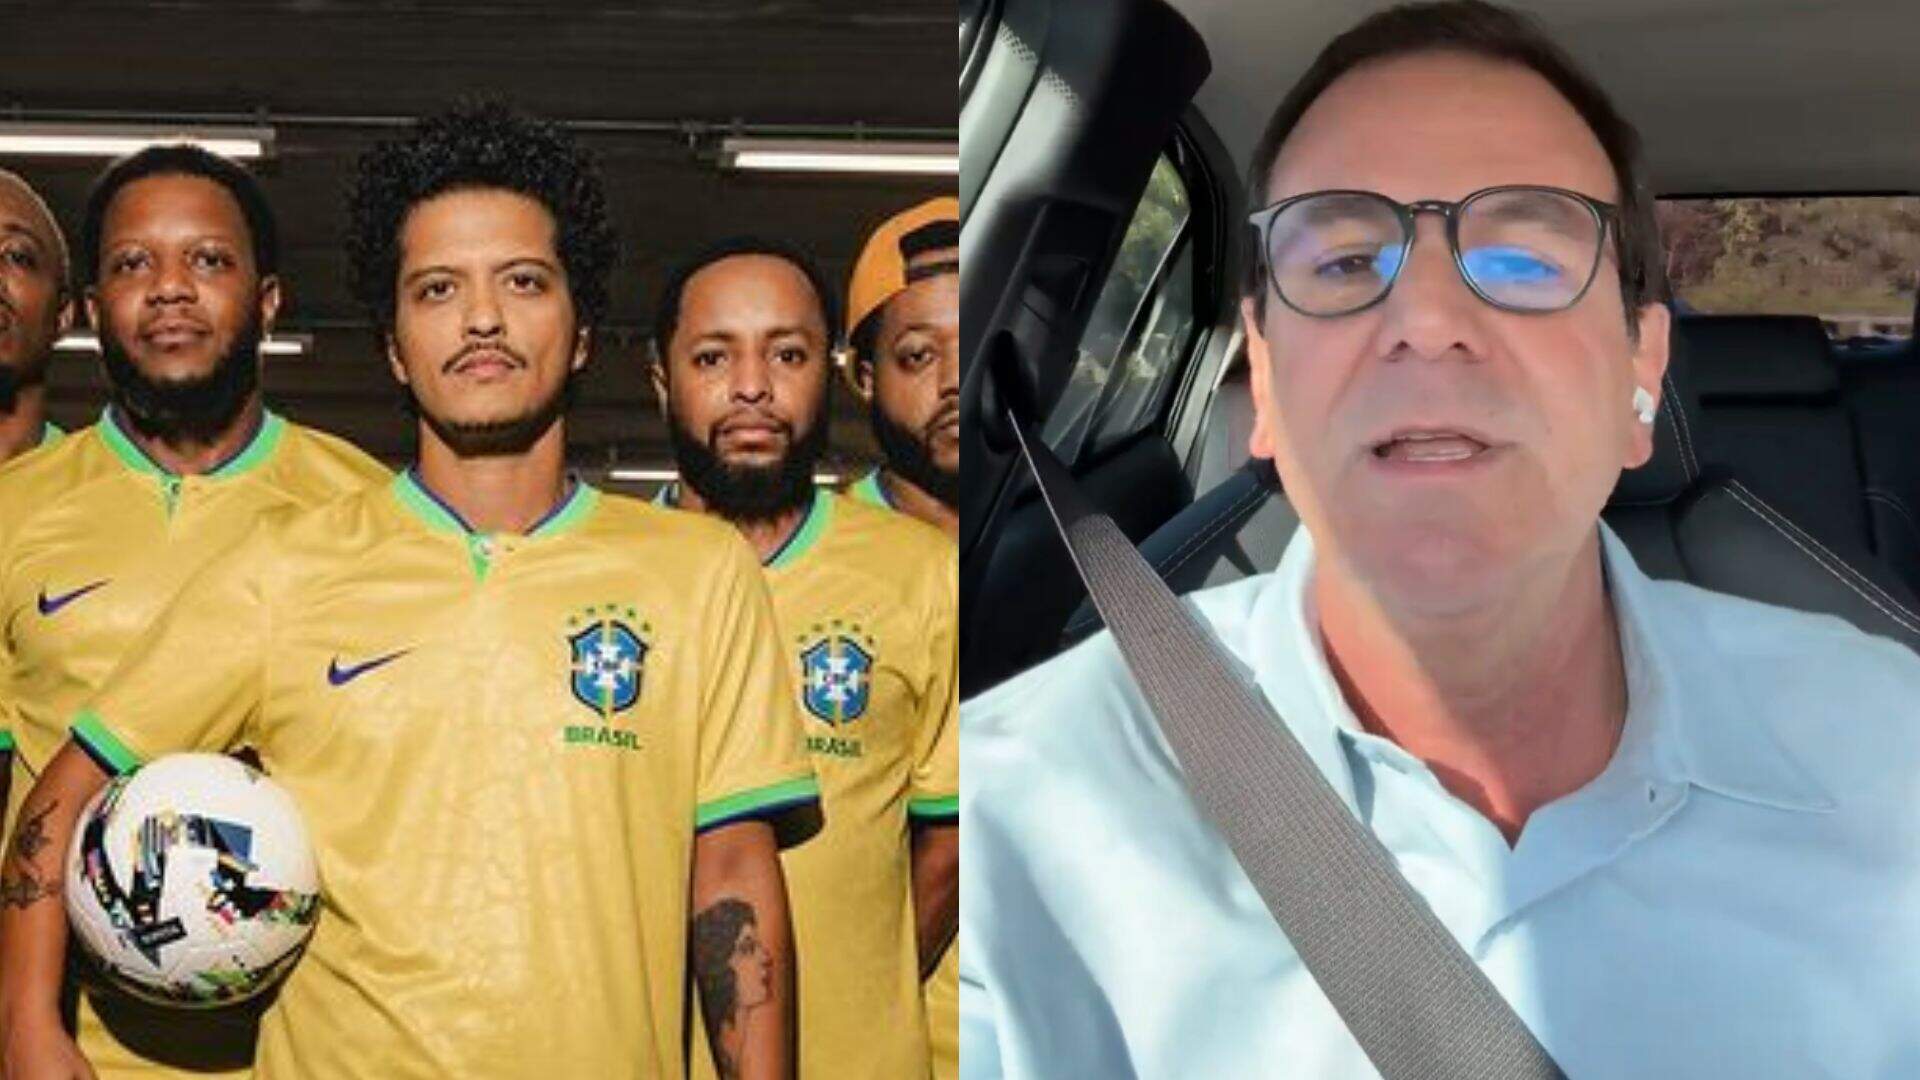 Show de Bruno Mars pode não acontecer no Rio de Janeiro; entenda a polêmica